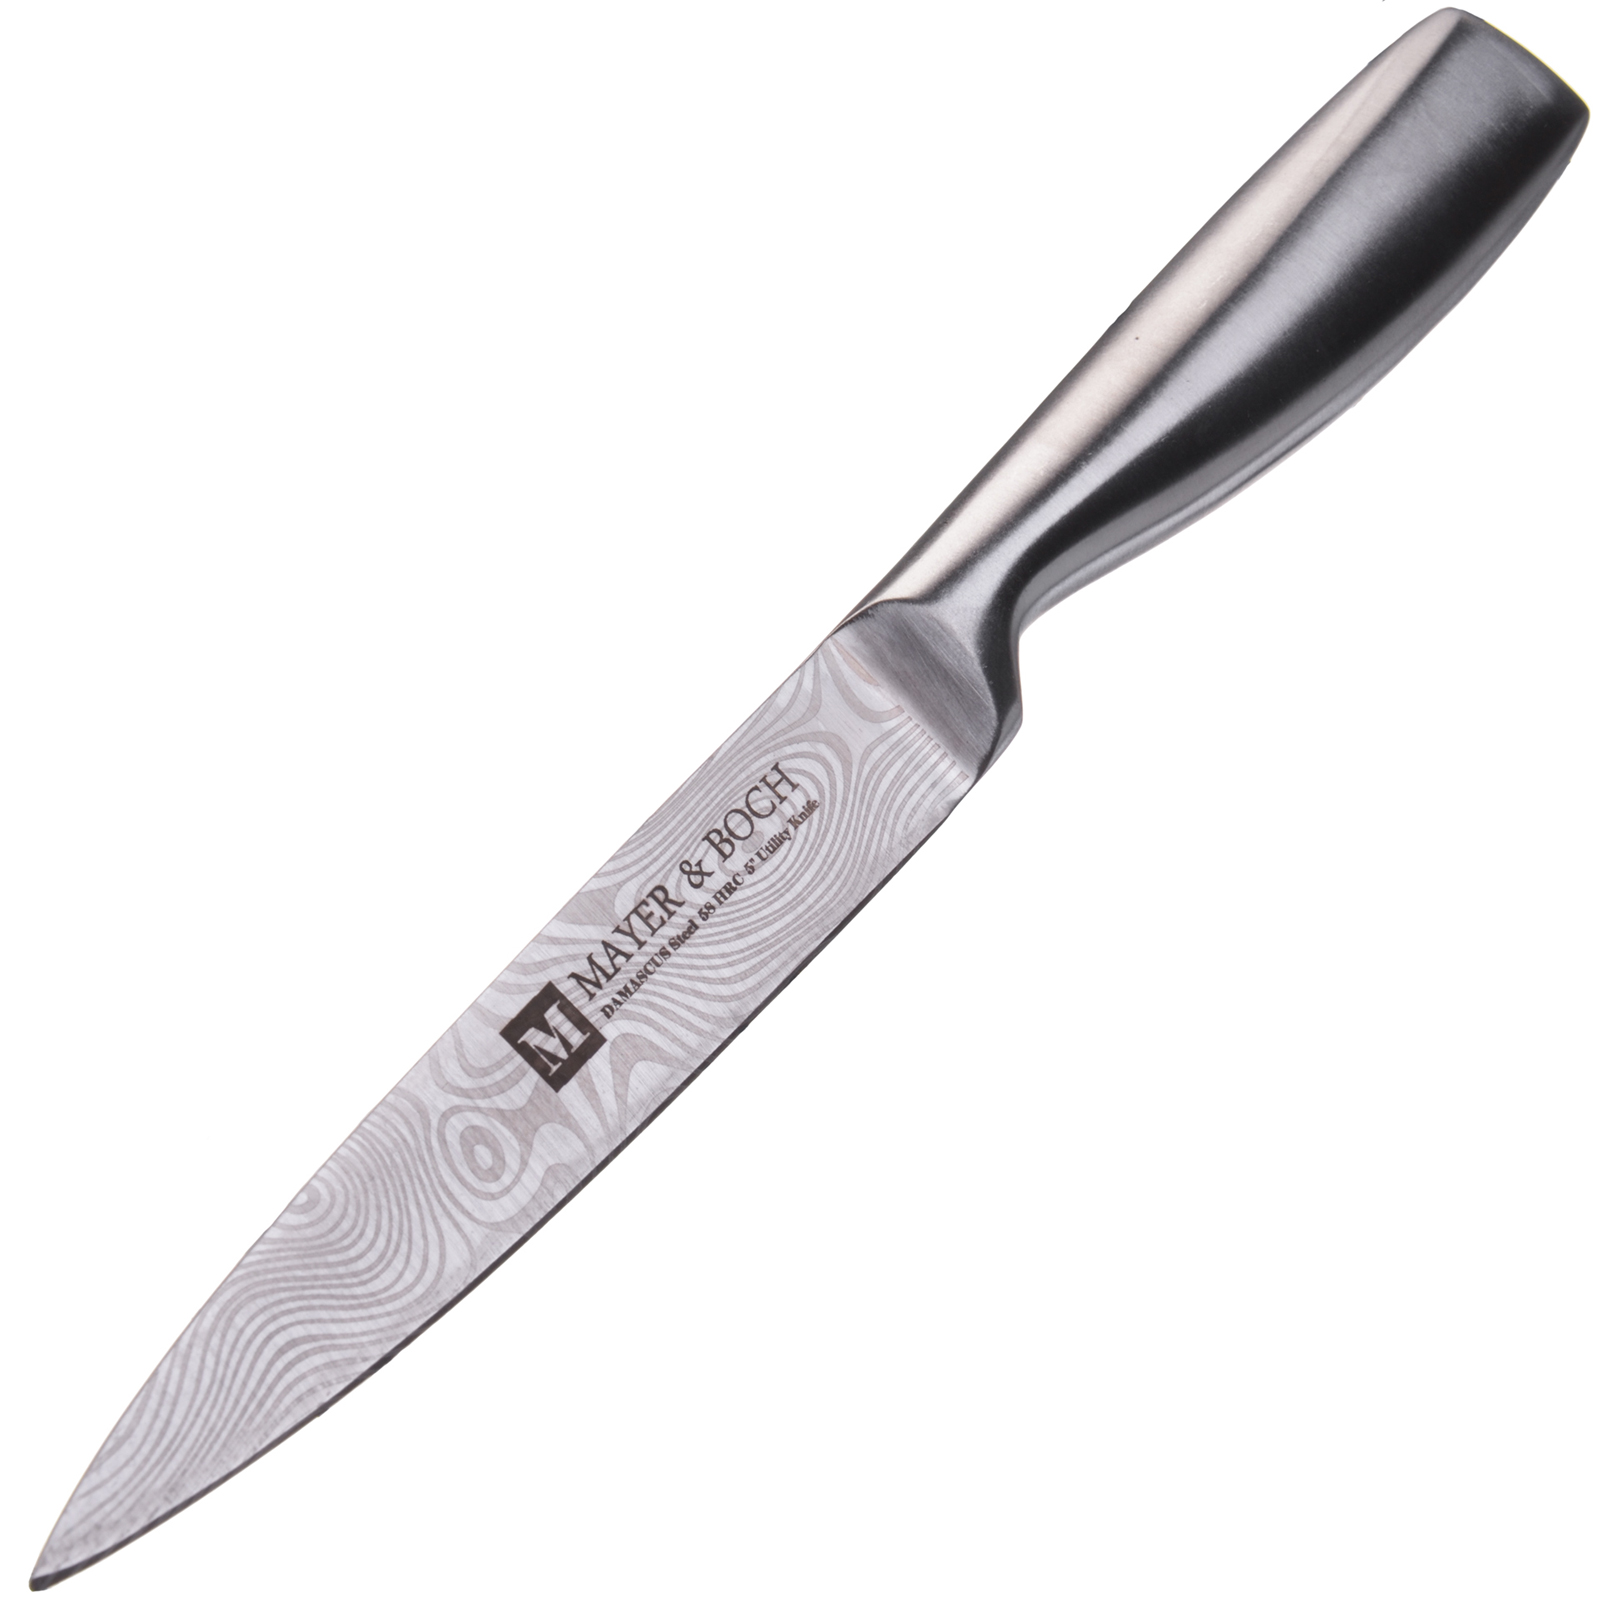 фото Нож универсальный Mayer & Boch Shine, цвет: серебристый, длина лезвия 12,7 см